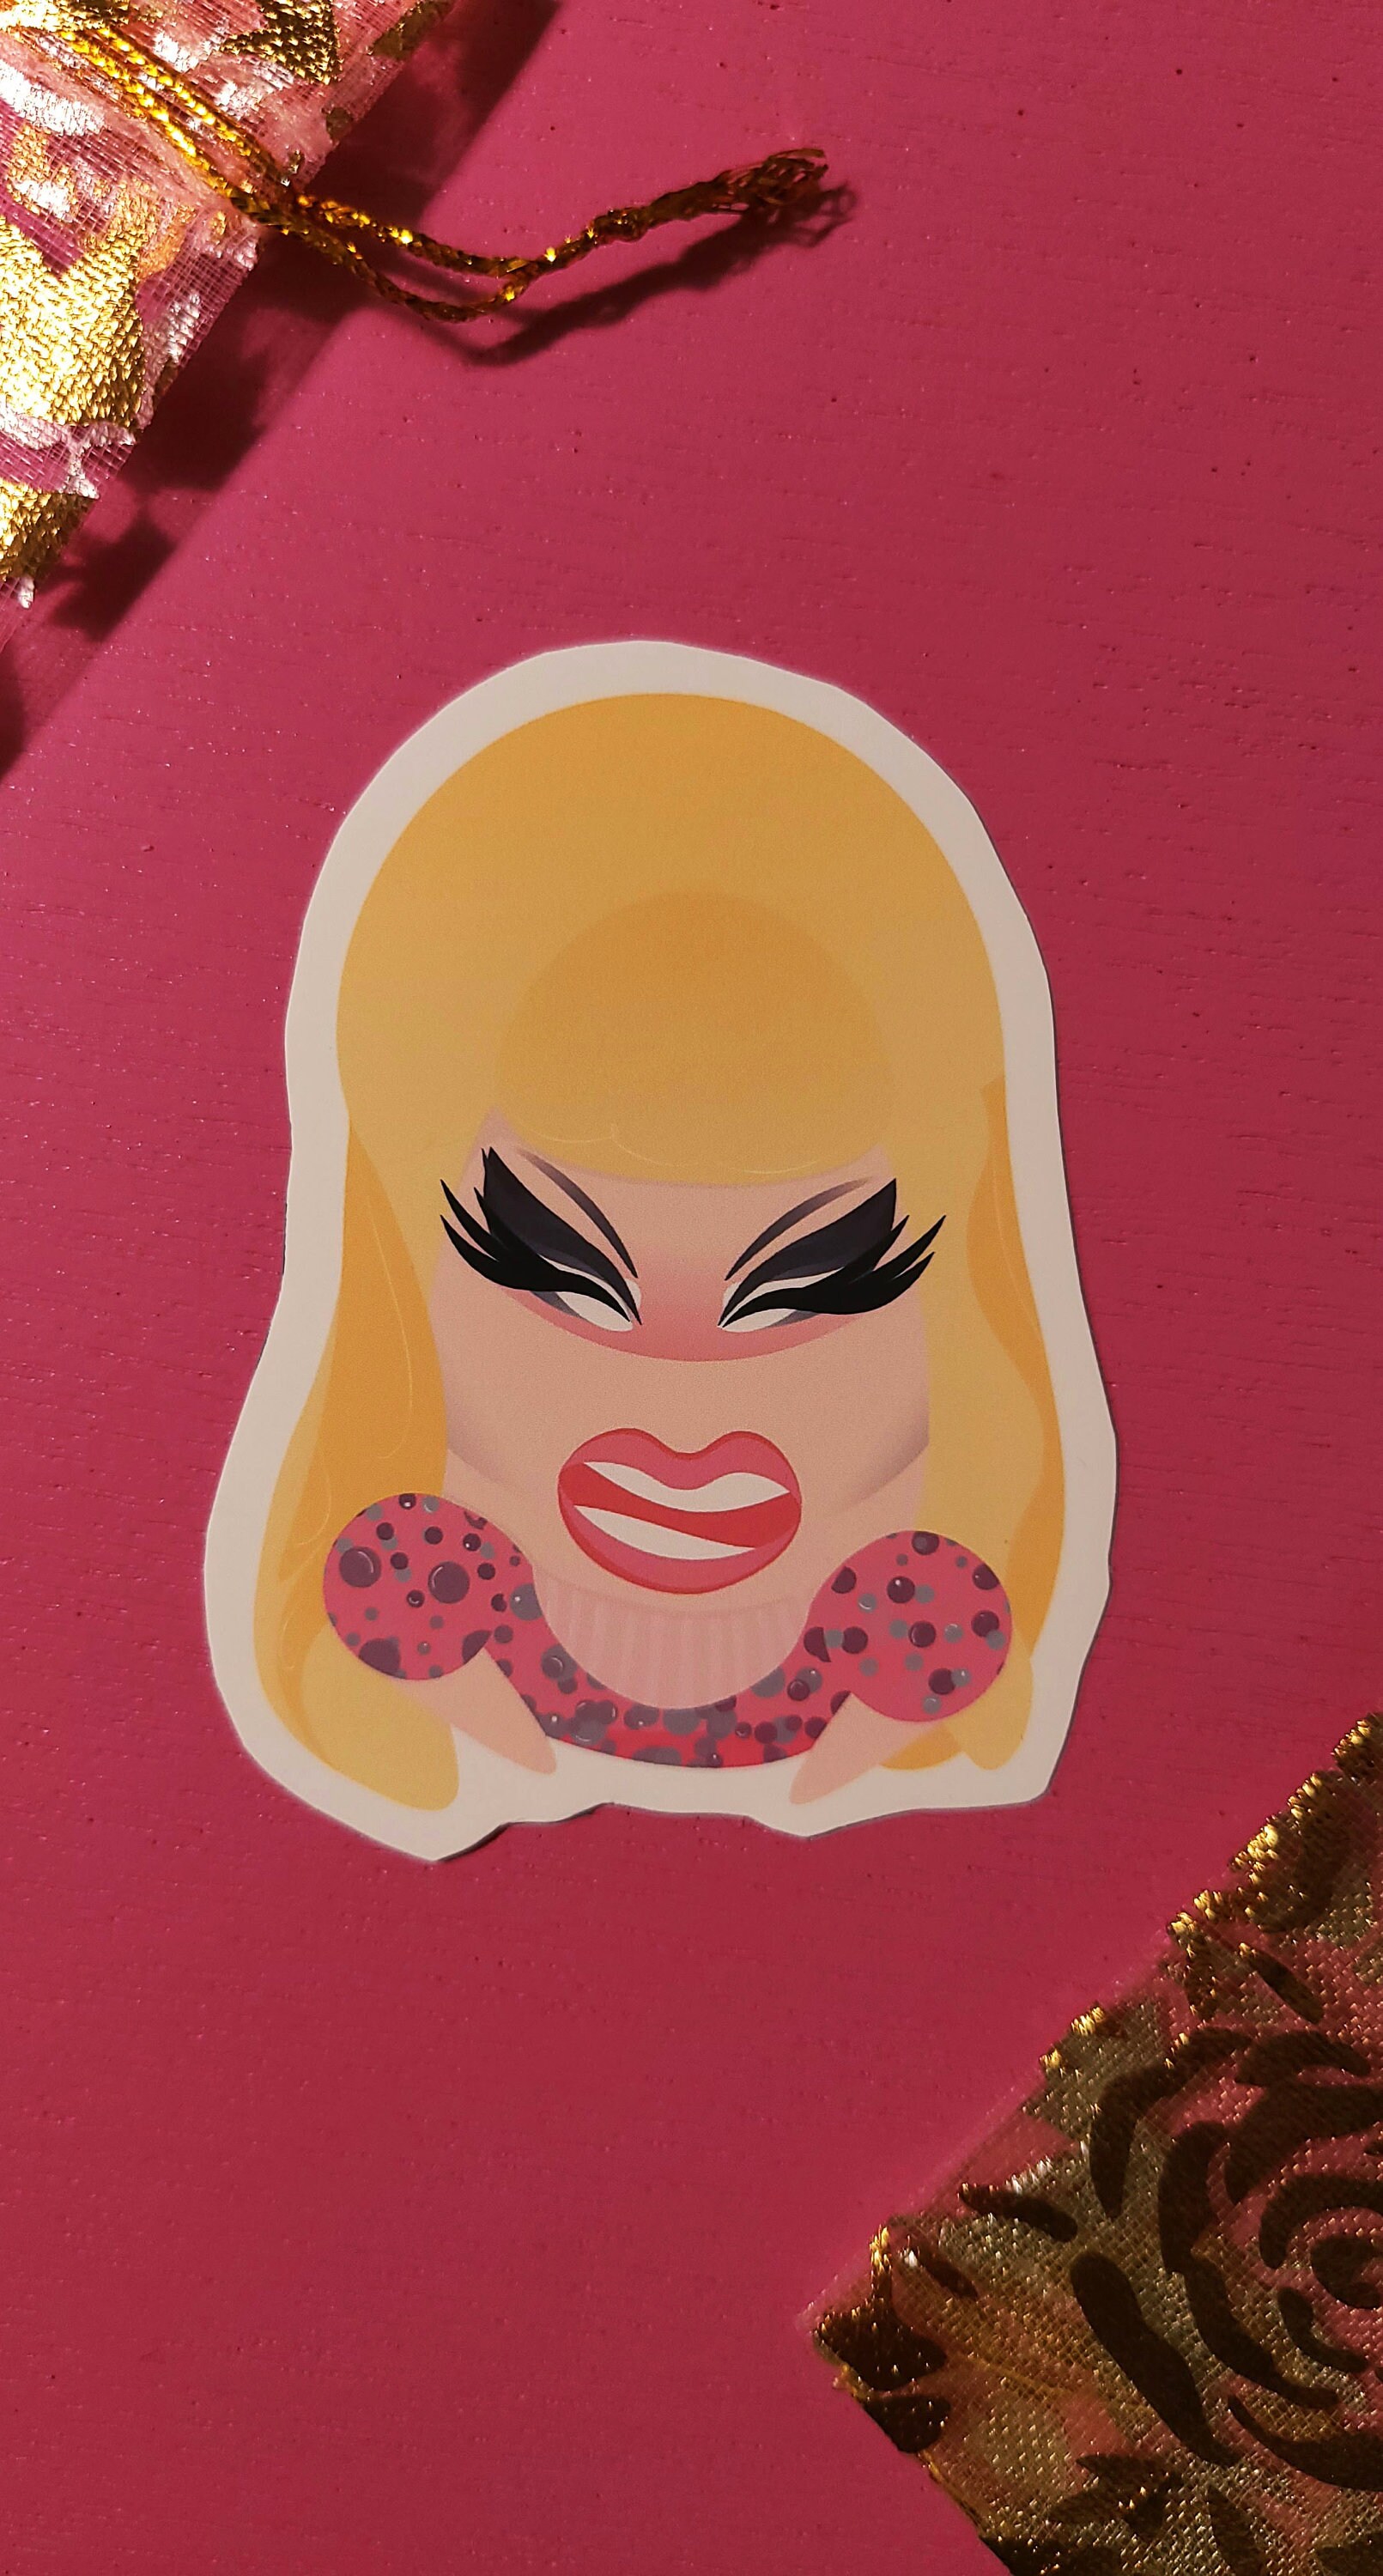 Drag Queen Stickers Bob the drag queen Bianca Del Rio | Etsy